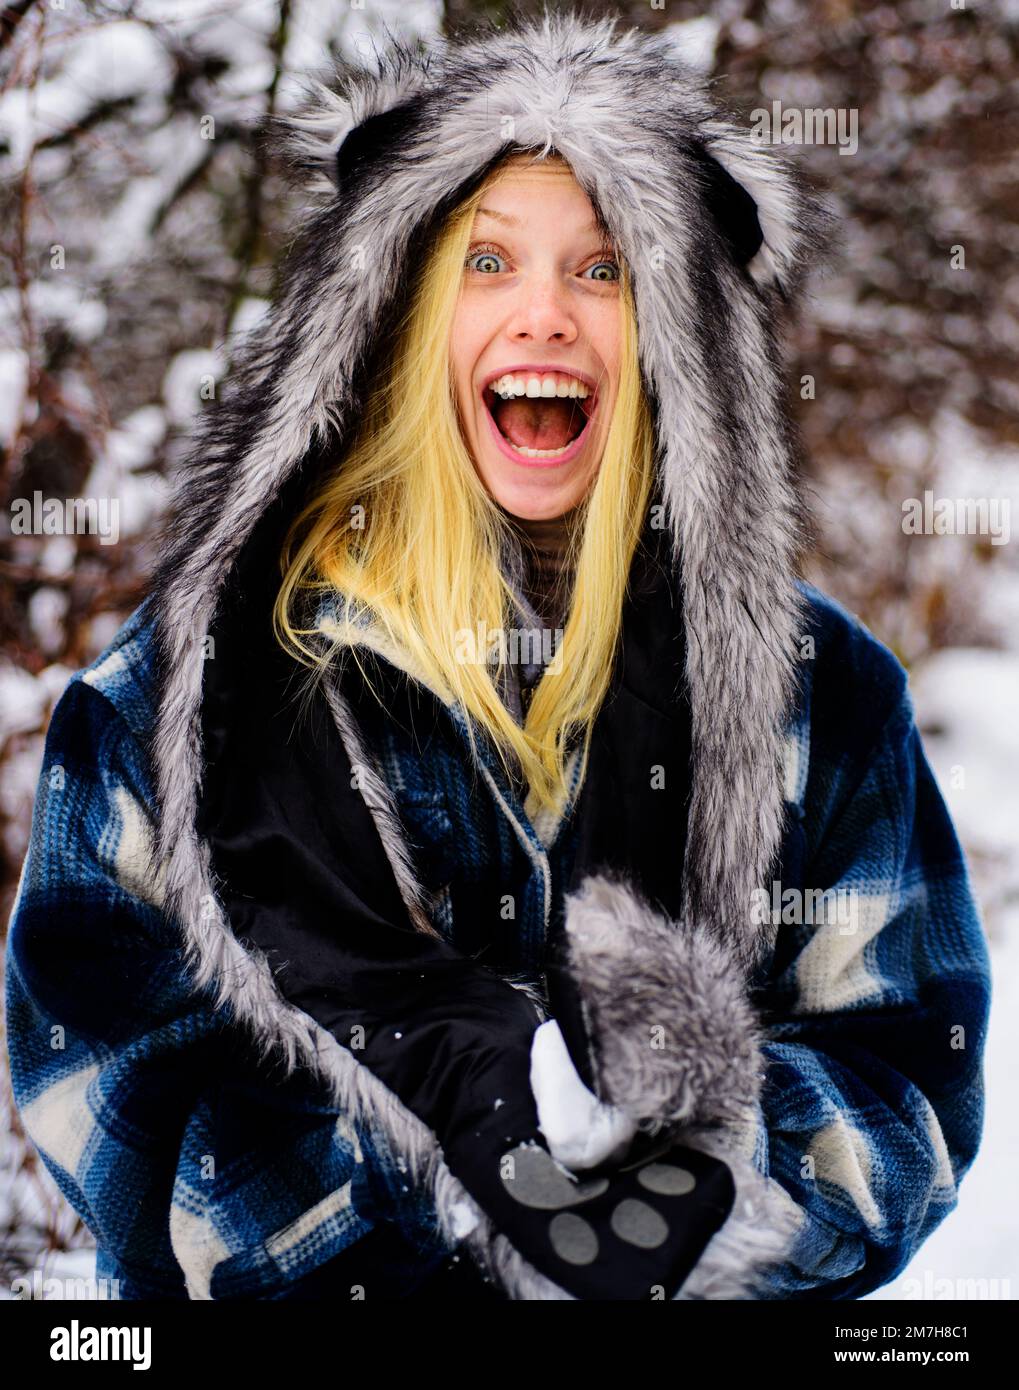 Lächelndes Mädchen in warmer Kleidung mit Schneeball. Schöne junge Frau, die im Winterpark mit Schnee spielt. Stockfoto